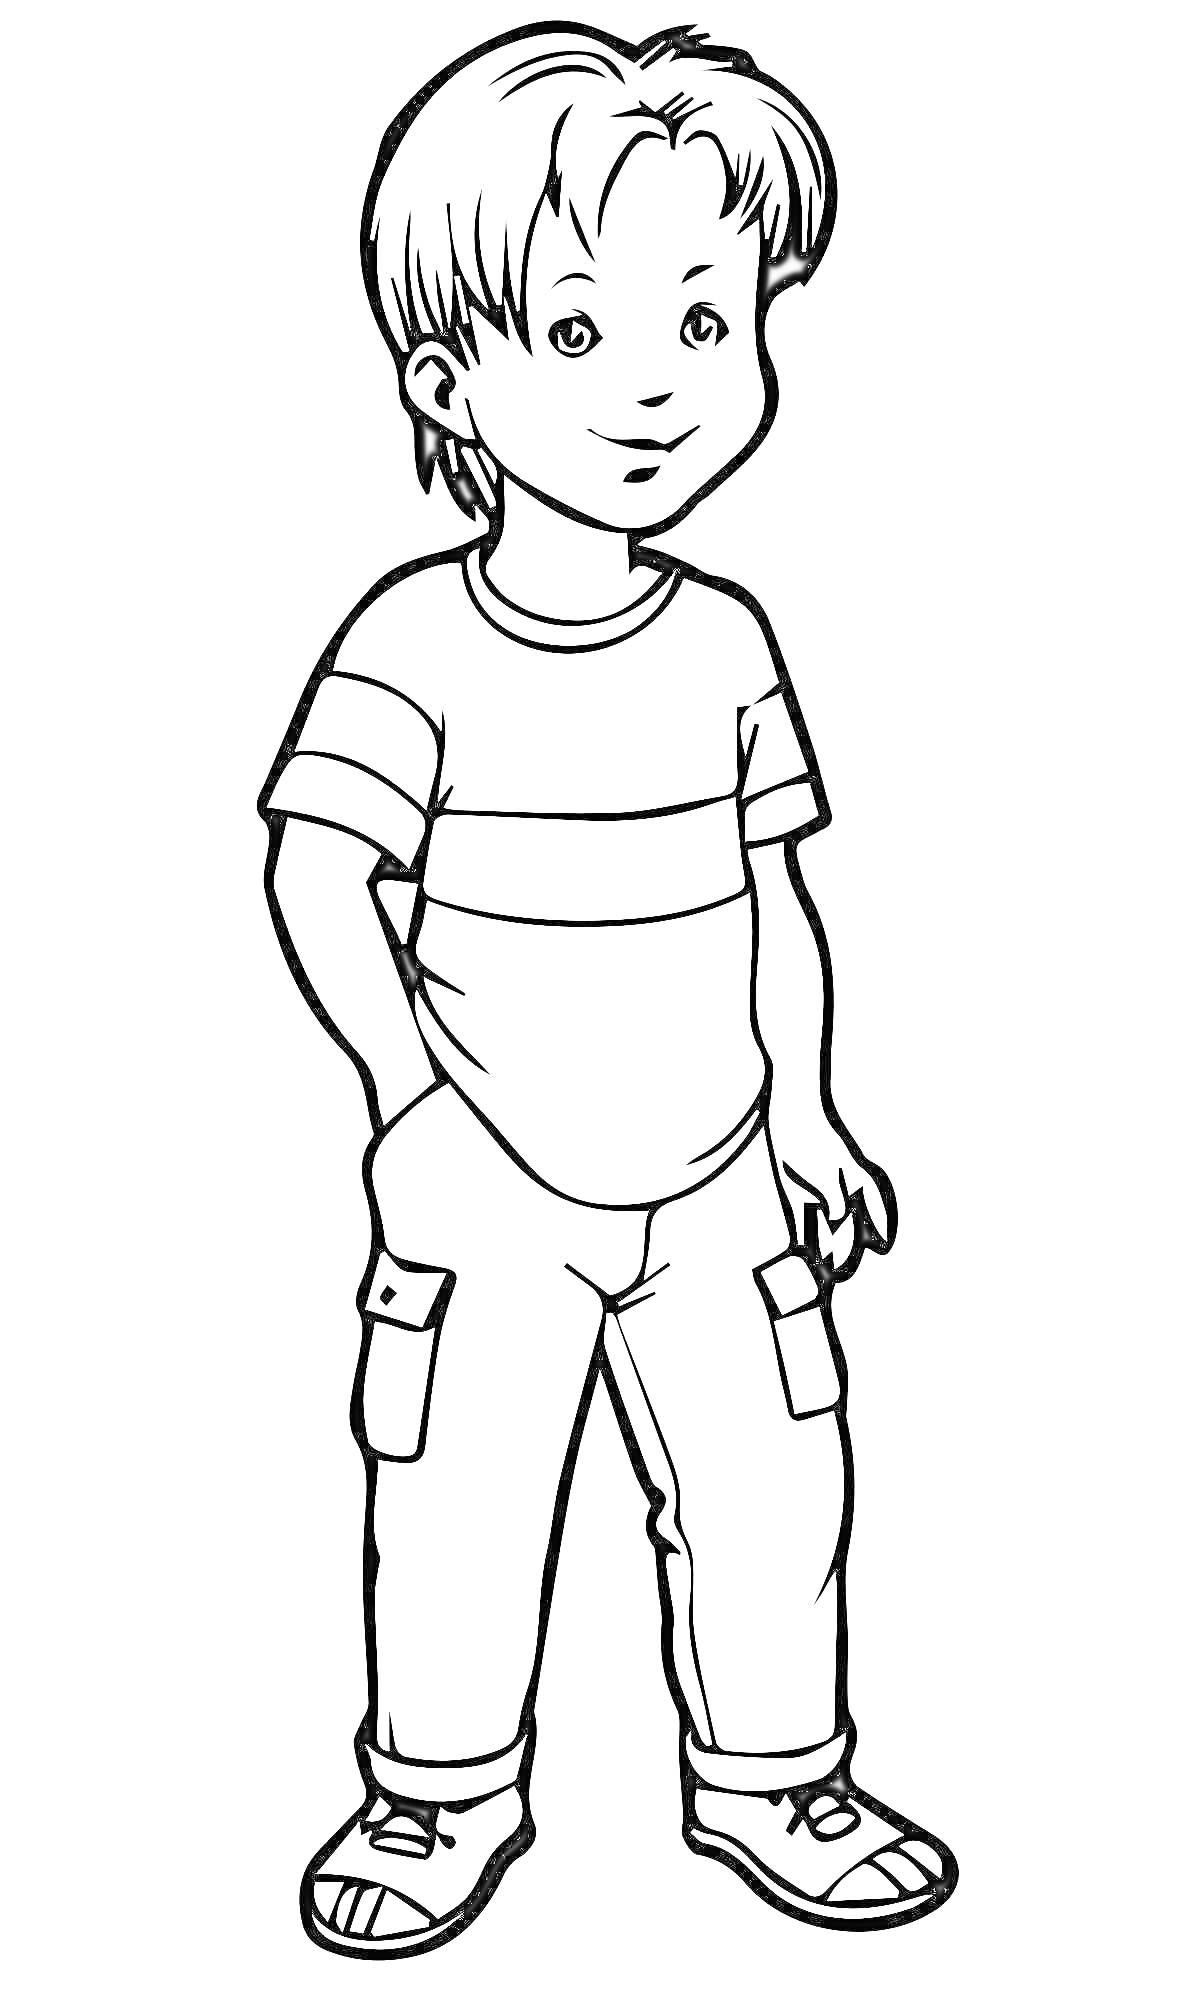 Раскраска Малыш в футболке и брюках с карманами, стоящий с одной рукой в кармане